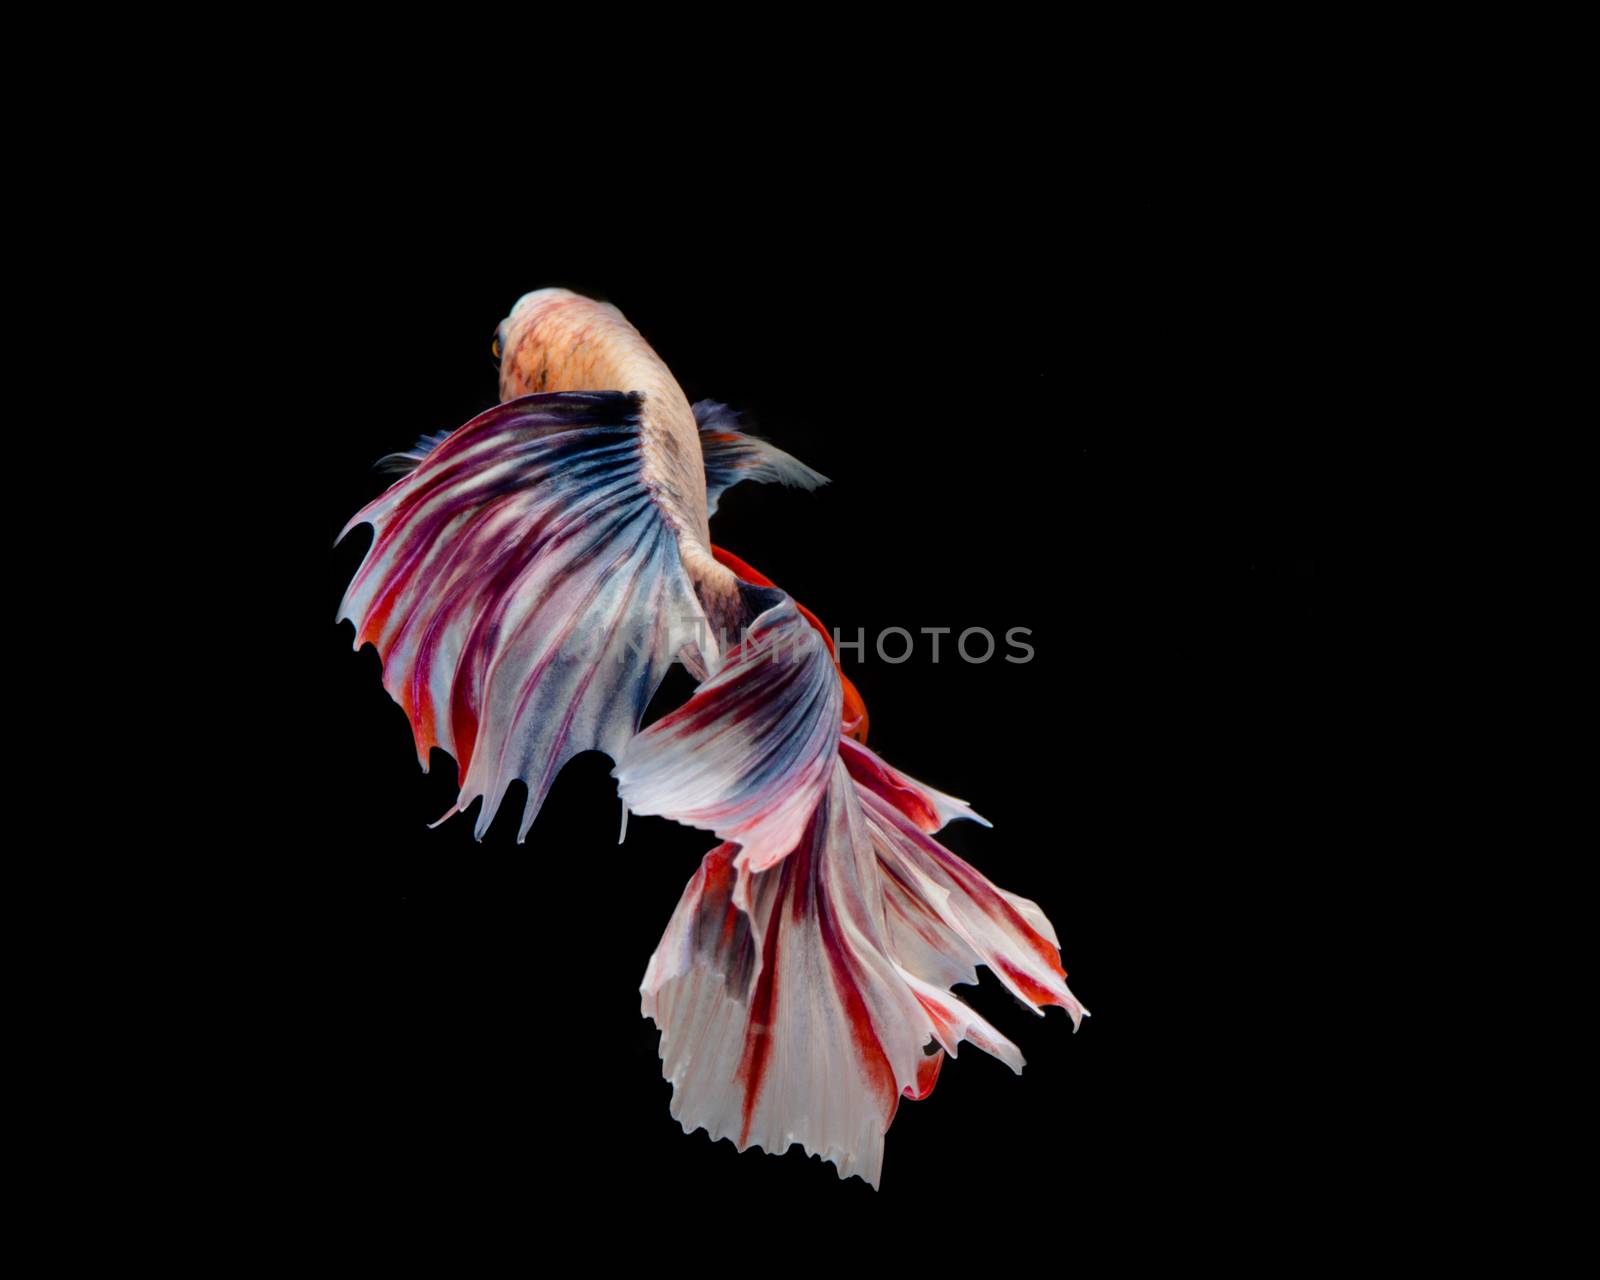 Multi-color betta fish, siamese fighting fish on black background
